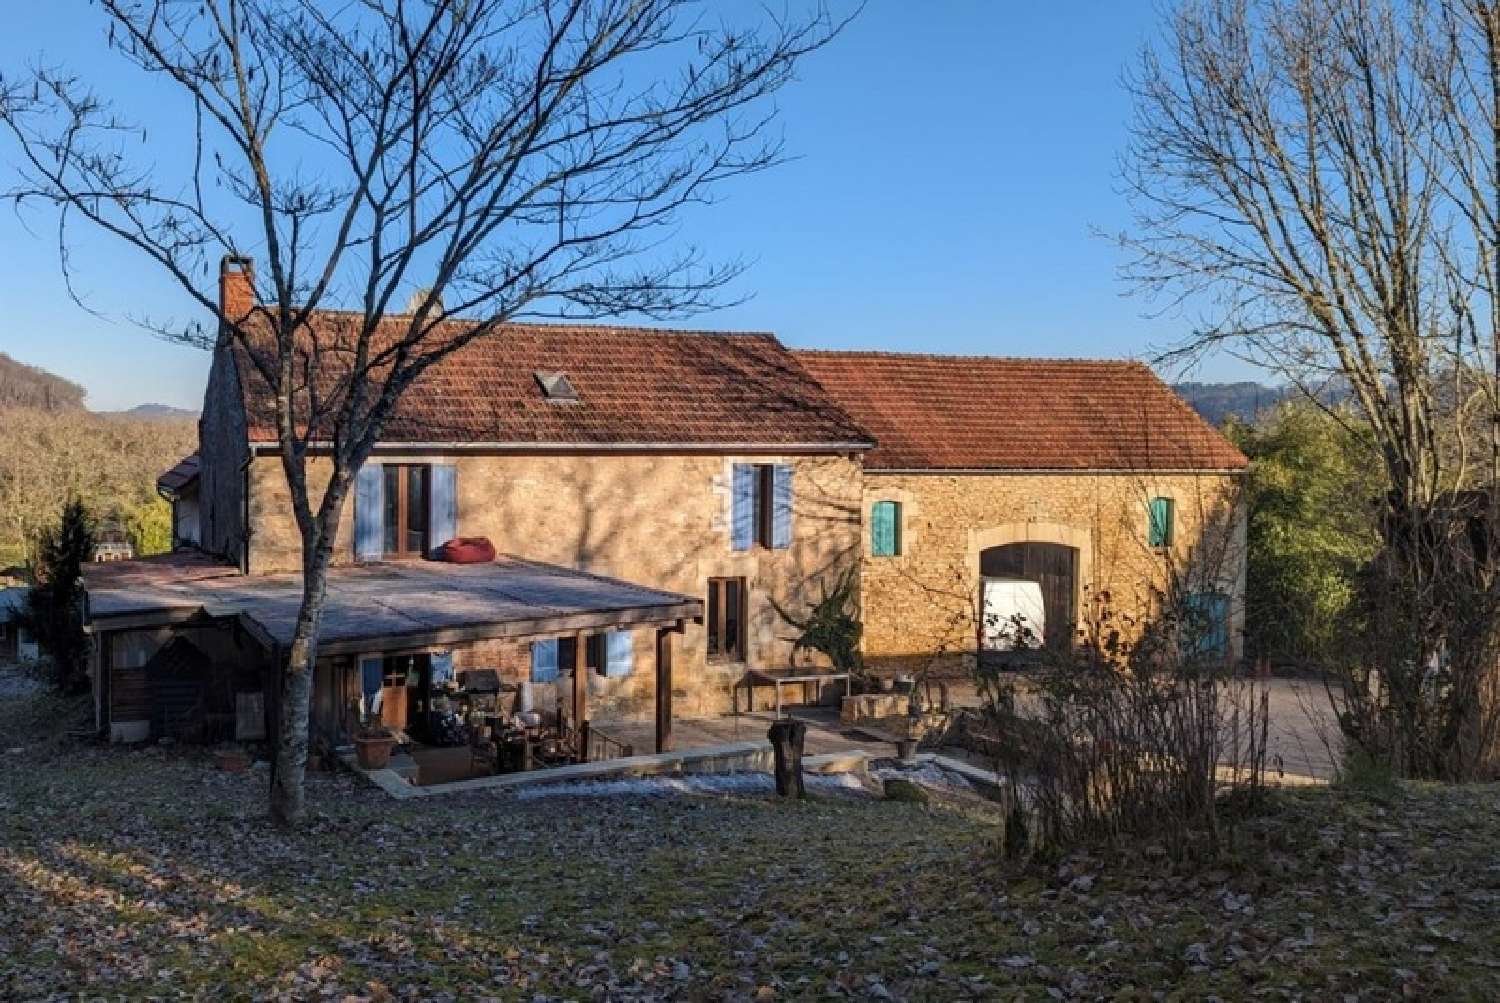  à vendre propriété Sarlat-la-Canéda Dordogne 1